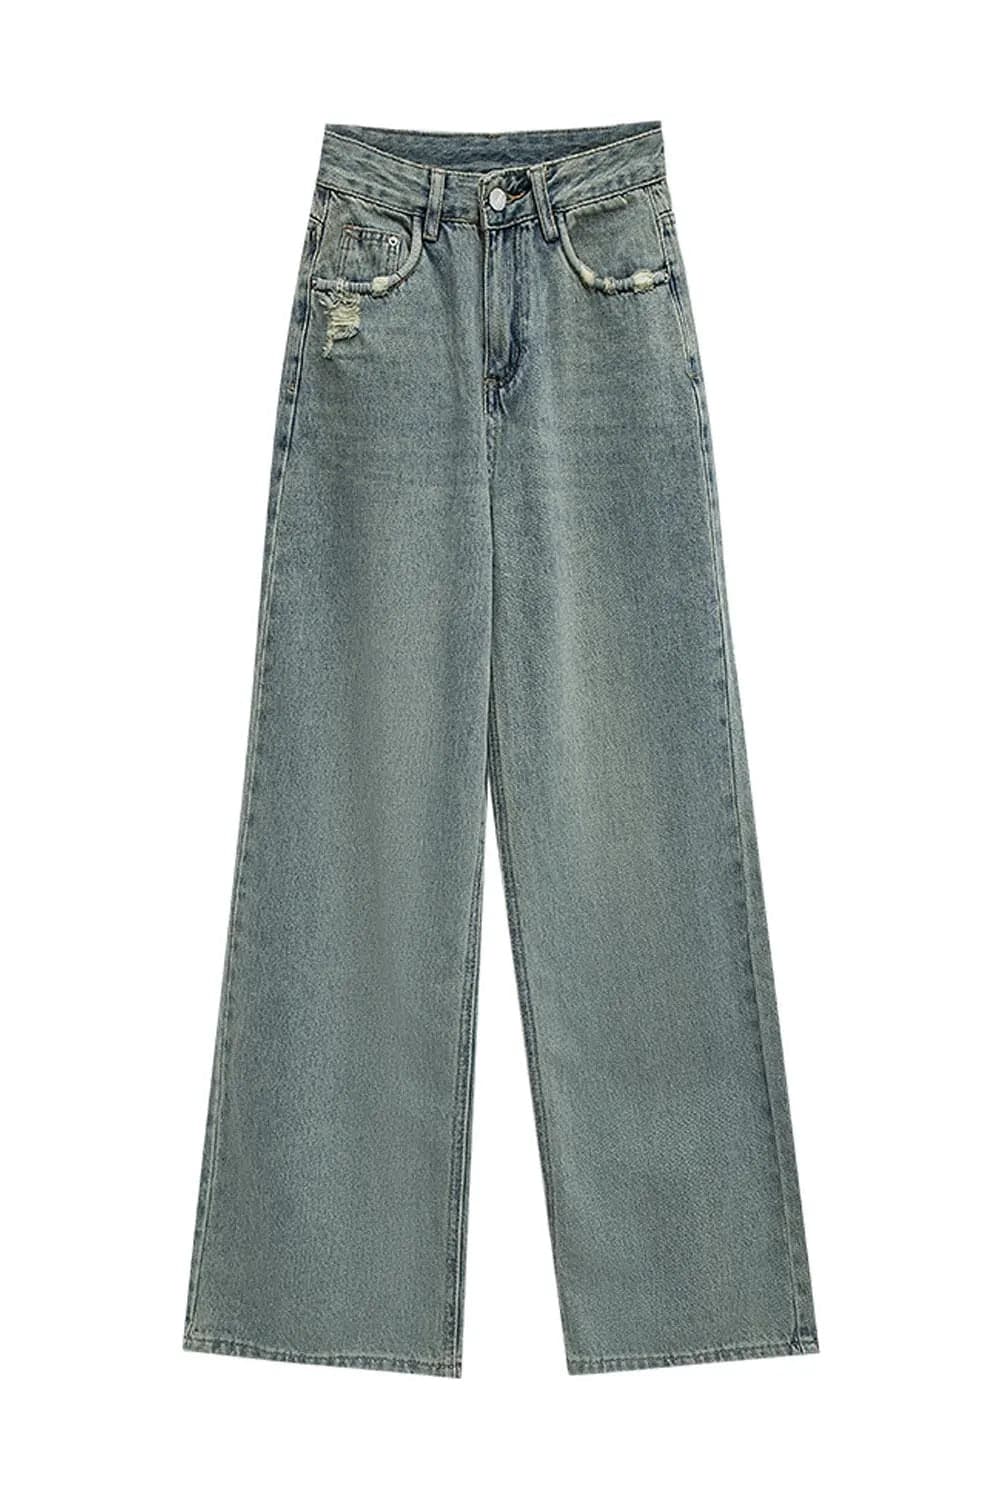 Jeans Denim Kaki Lebar Pinggang Tinggi yang bergaya dengan Cuci Vintaj